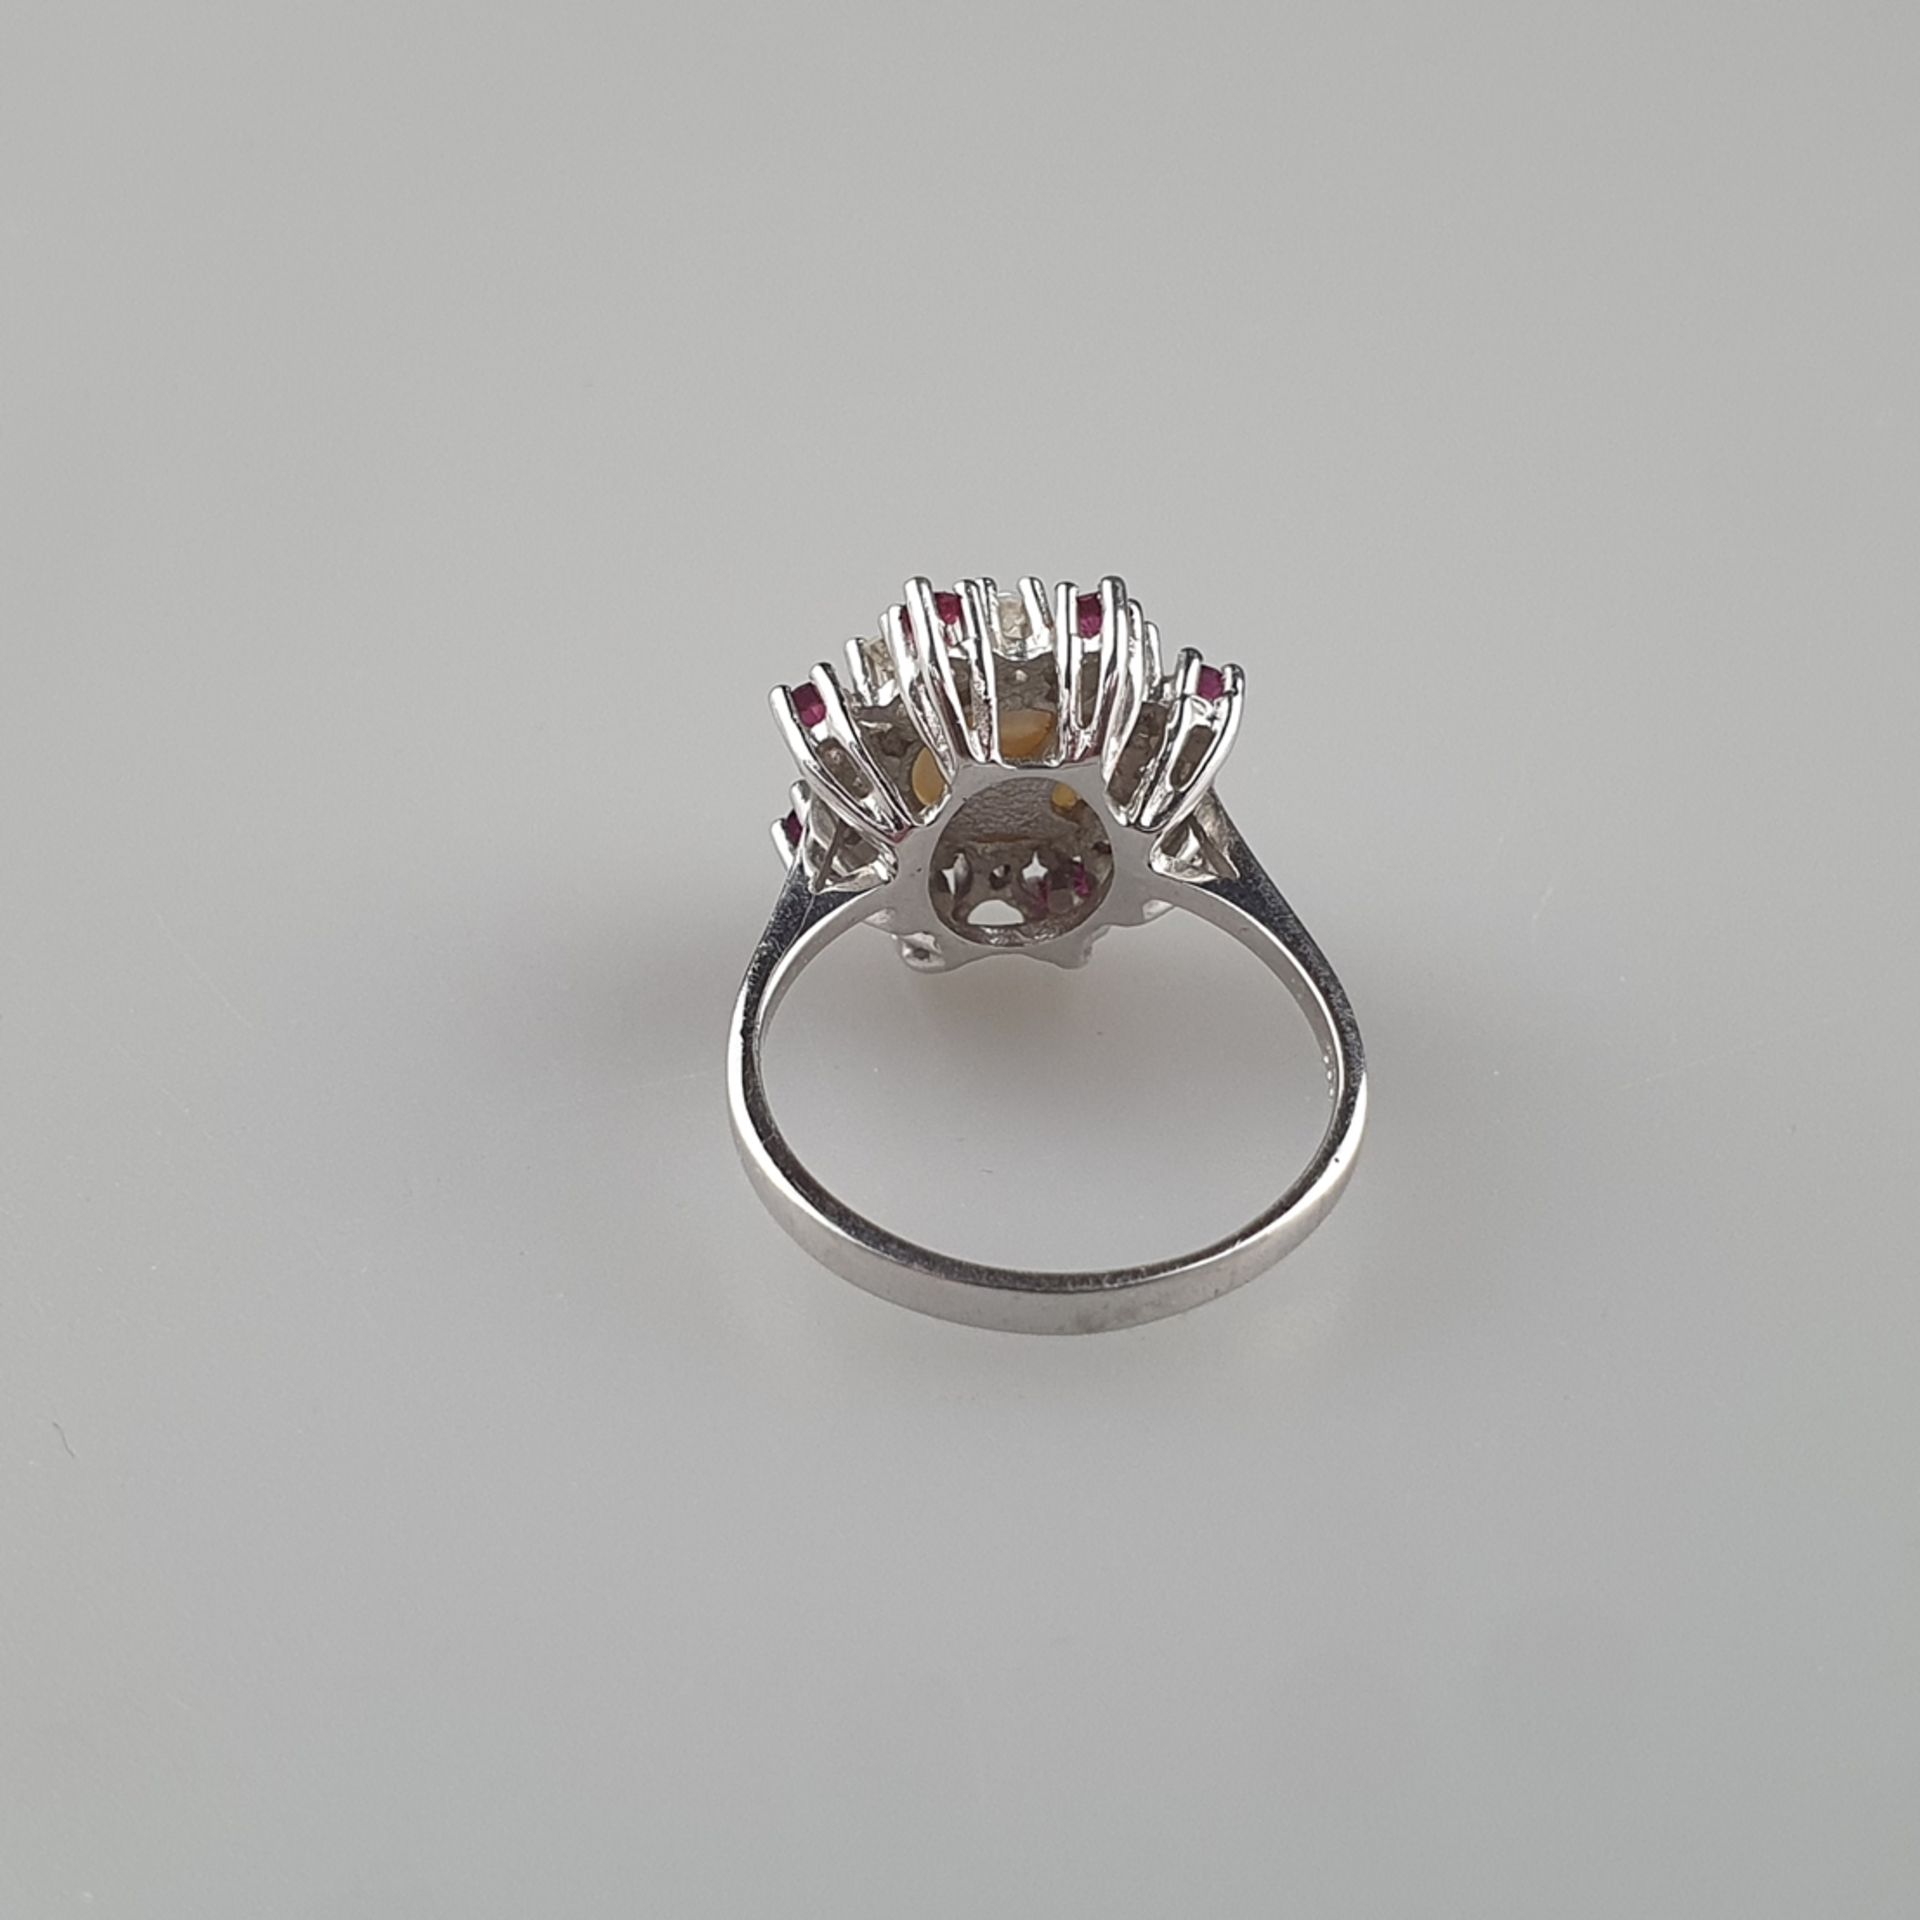 Perlring mit Diamant- und Rubinbesatz - Gelbgold 585/000 (14K), gestempelt, zentrale Perle von 8mm- - Image 5 of 7